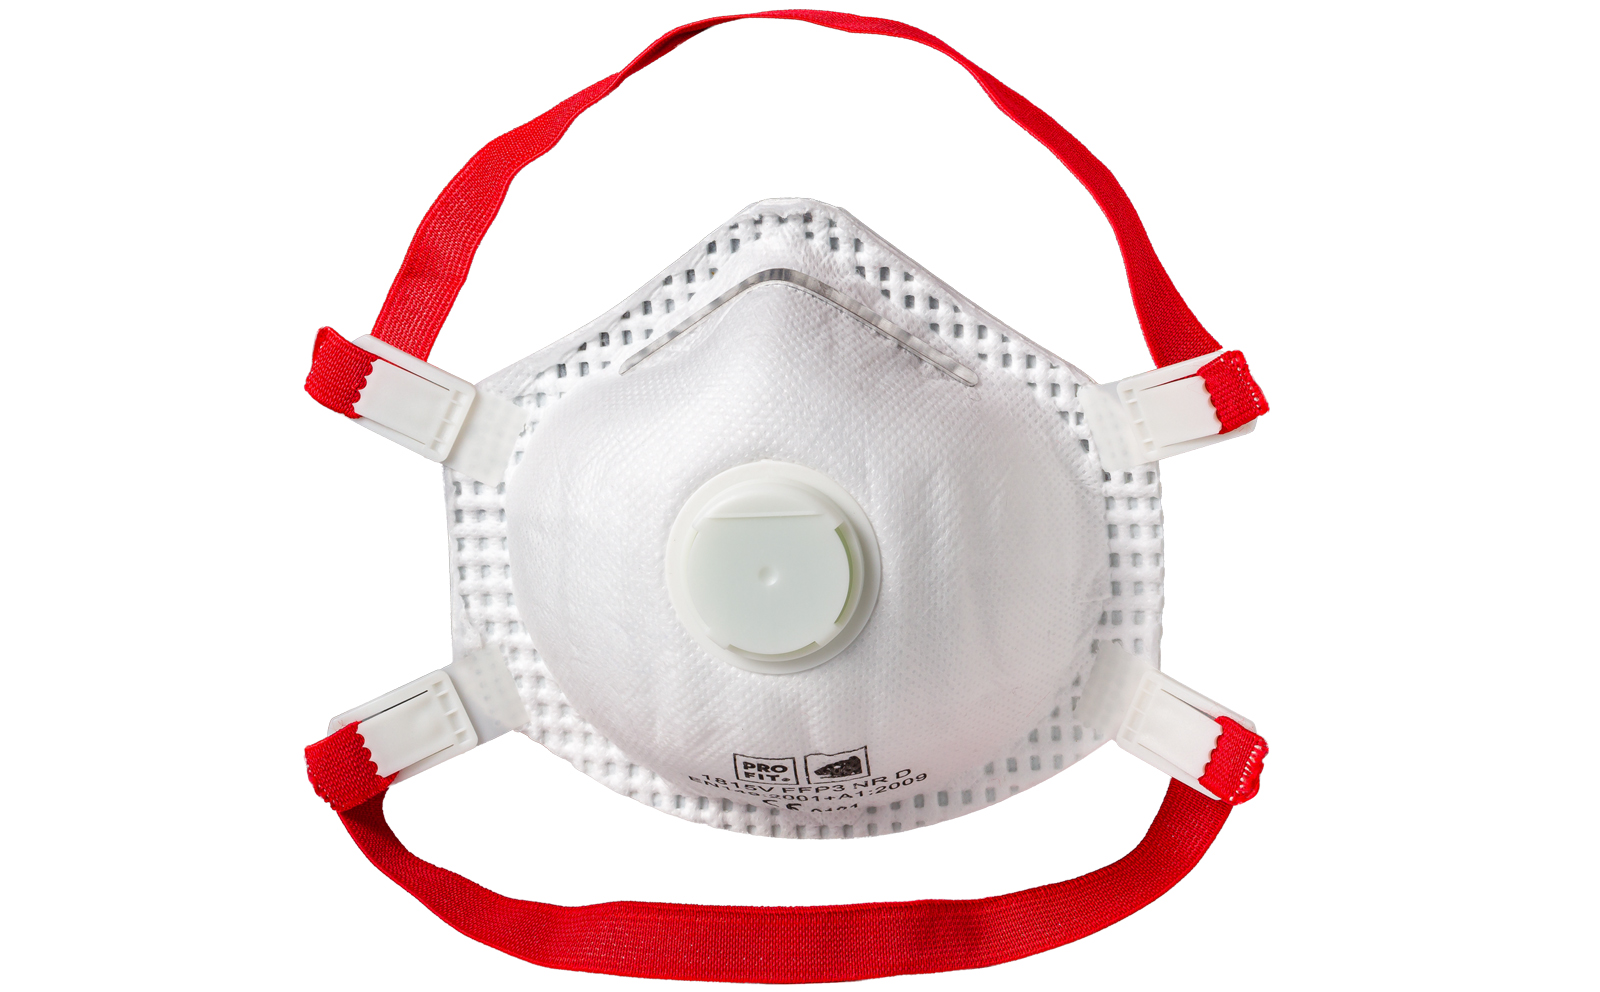 masque de protection respiratoire contre les solvants